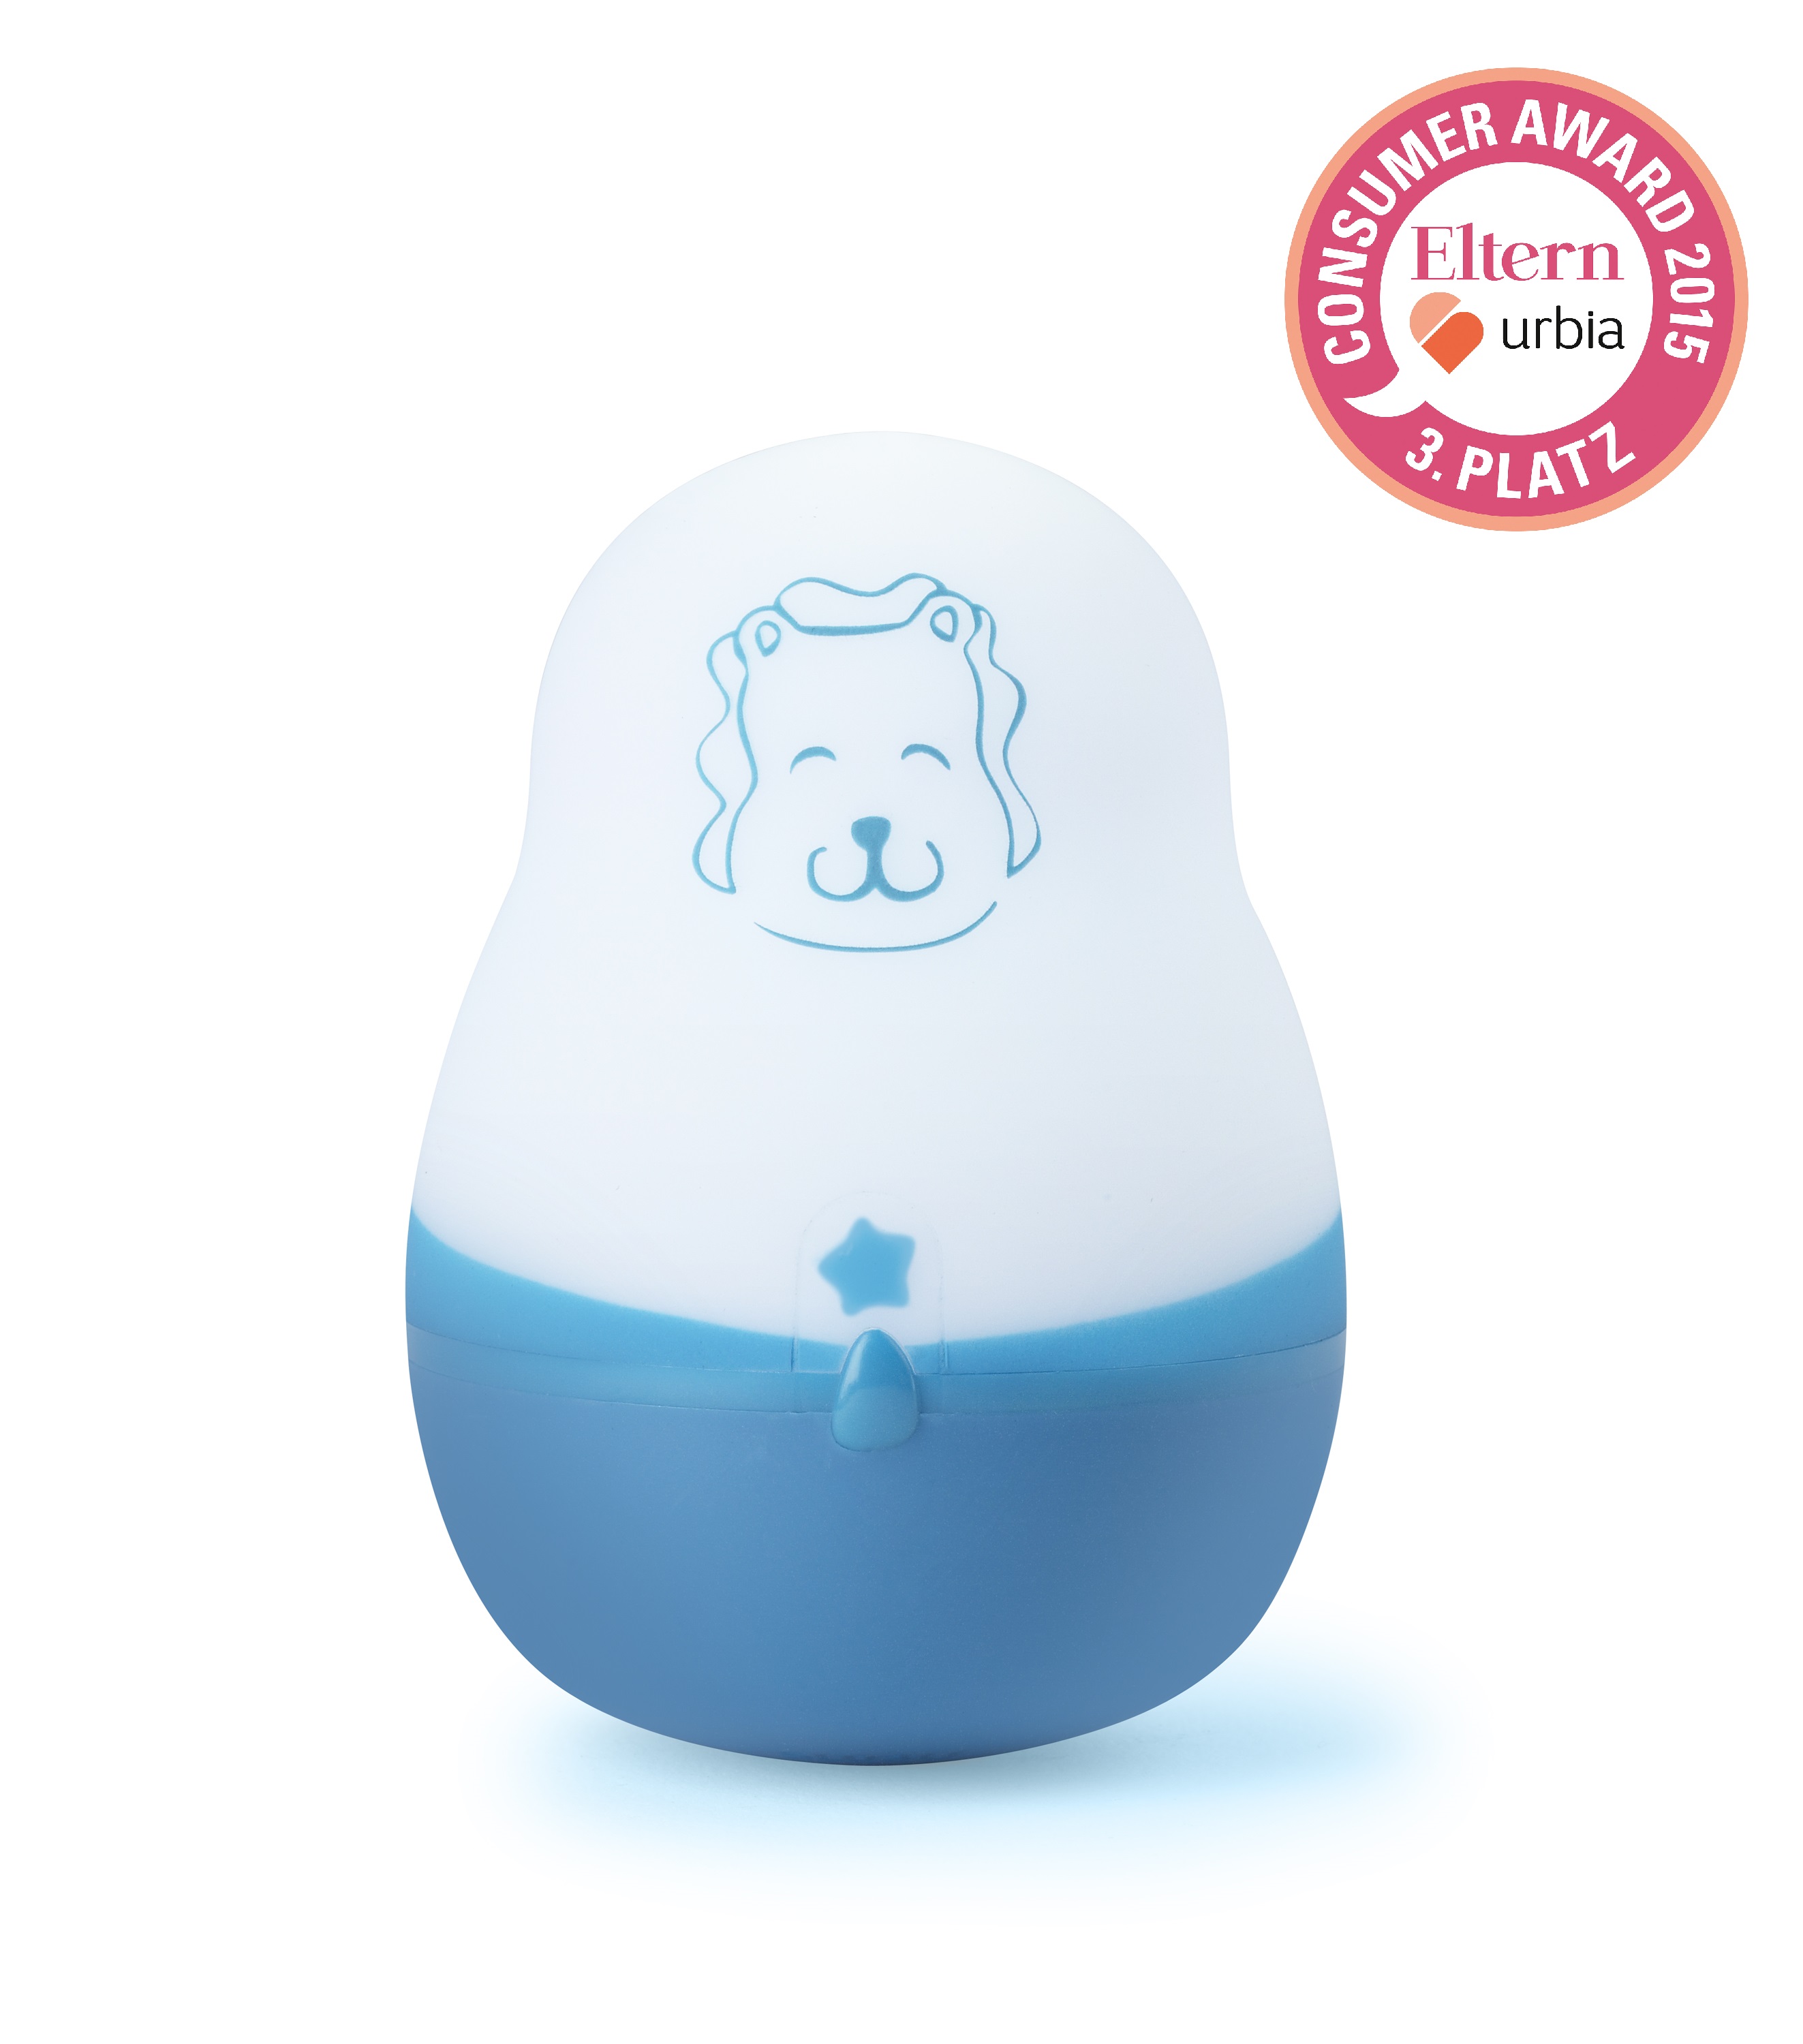 Babies & Kids @ Baby-Portal-123.de | Gewann den 3. Preis beim ELTERN & URBIA Consumer Award 2015: das Pabobo-Nachtlicht Super Nomade 